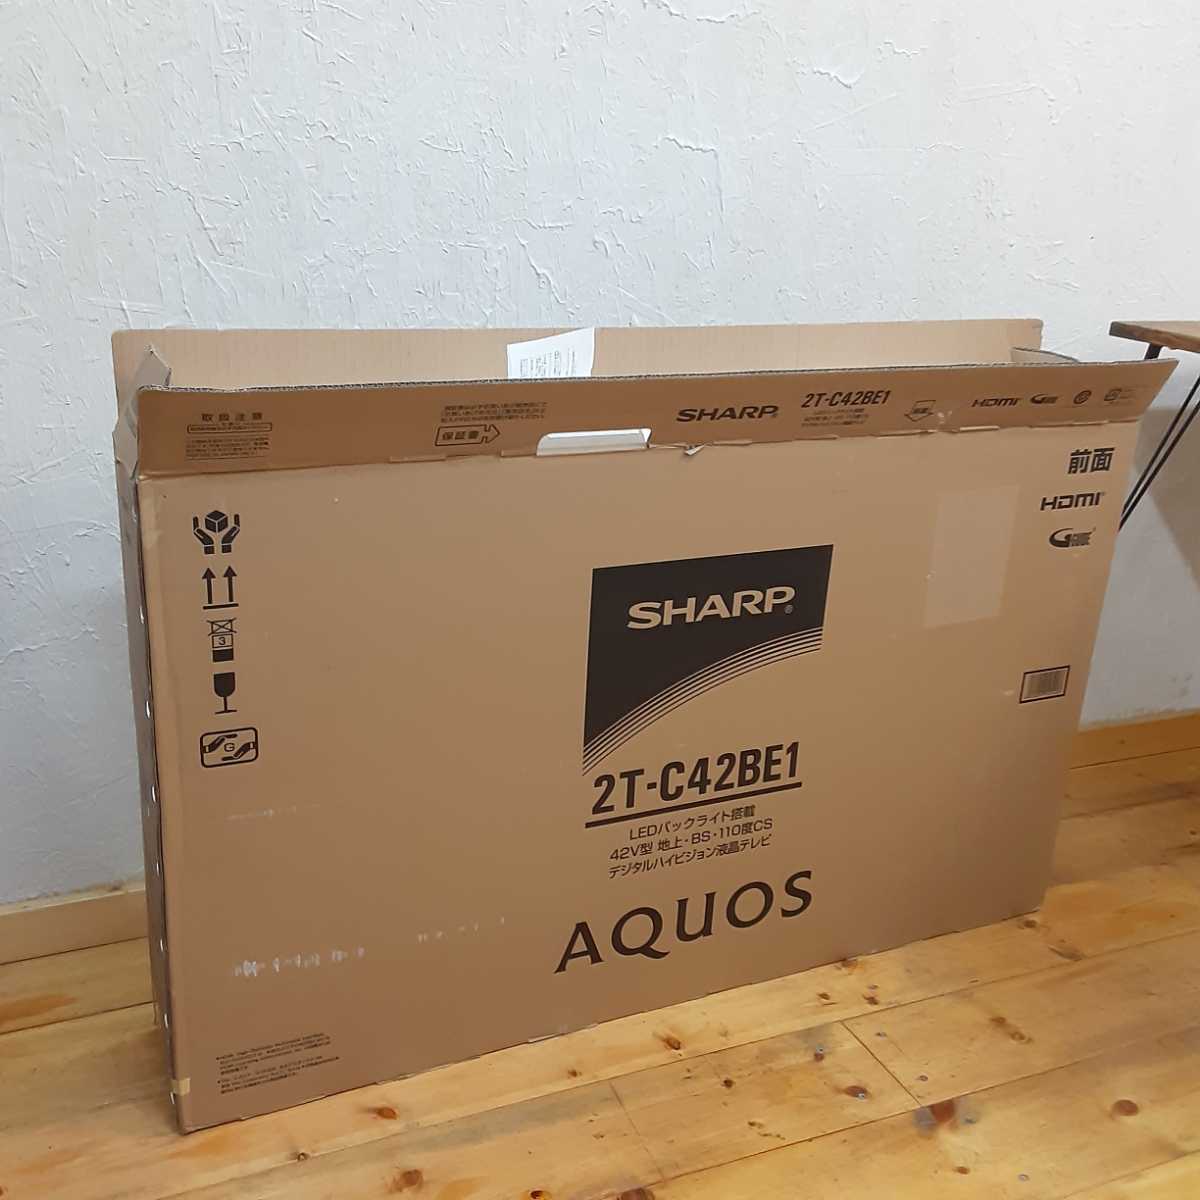 SHARP AQUOS 2T-C42BE1 デジタルハイビジョン液晶テレビ 42V型